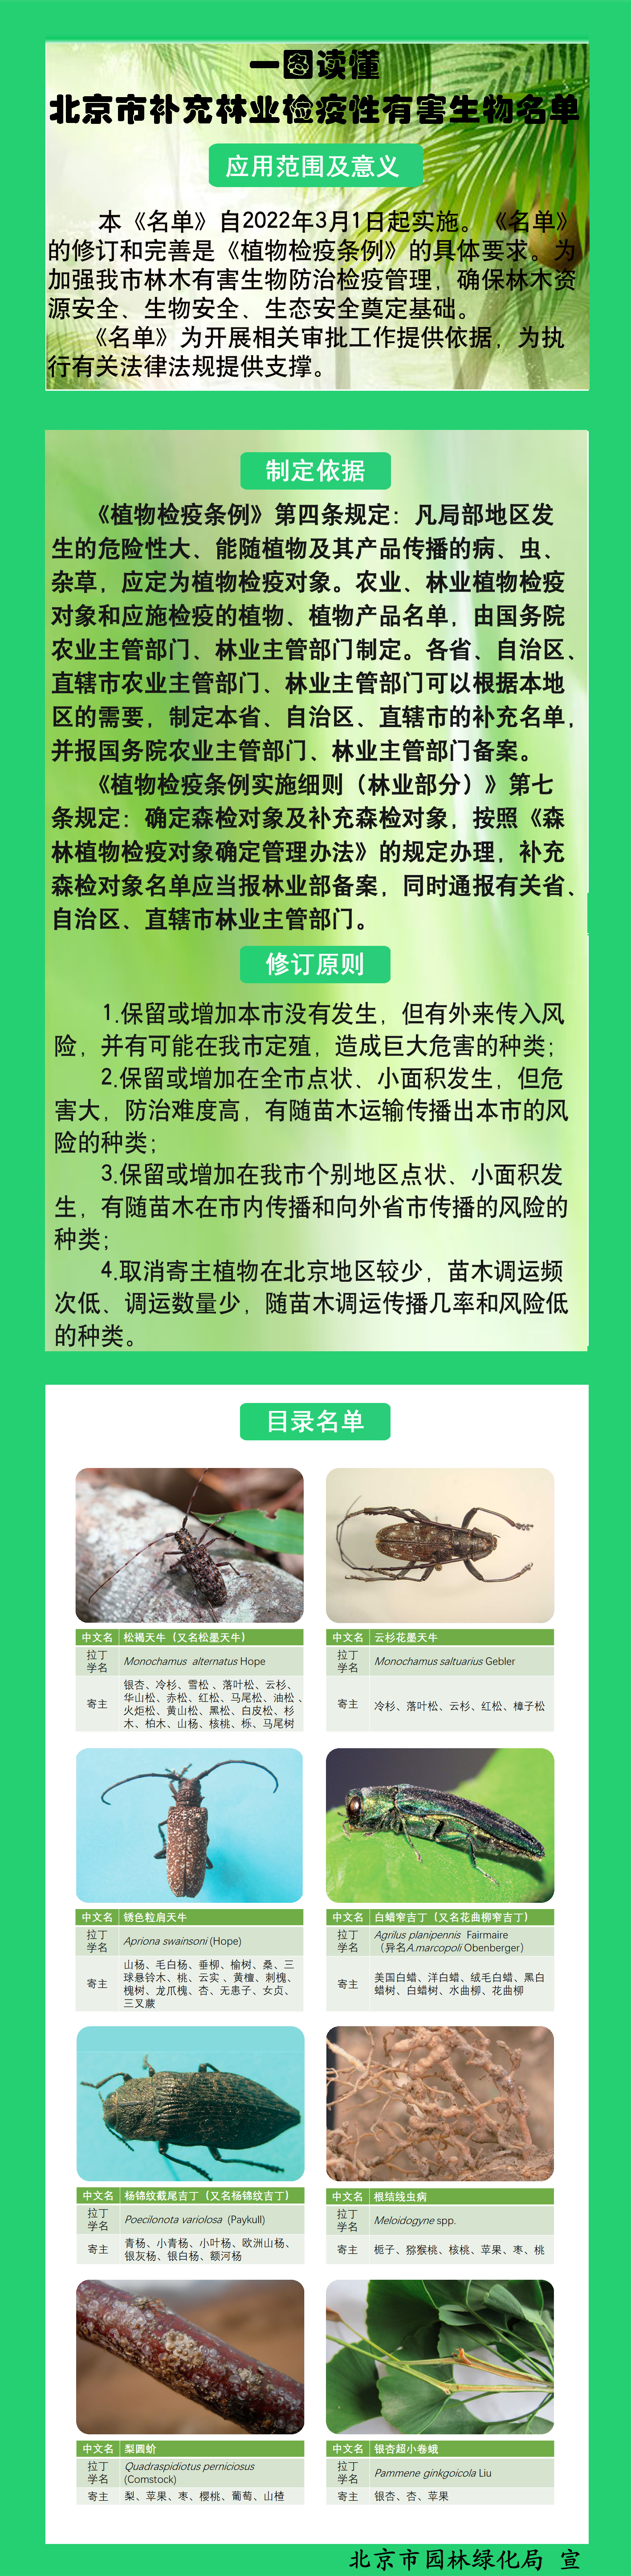 一图读懂《北京市补充林业检疫性有害生物名单》.jpg